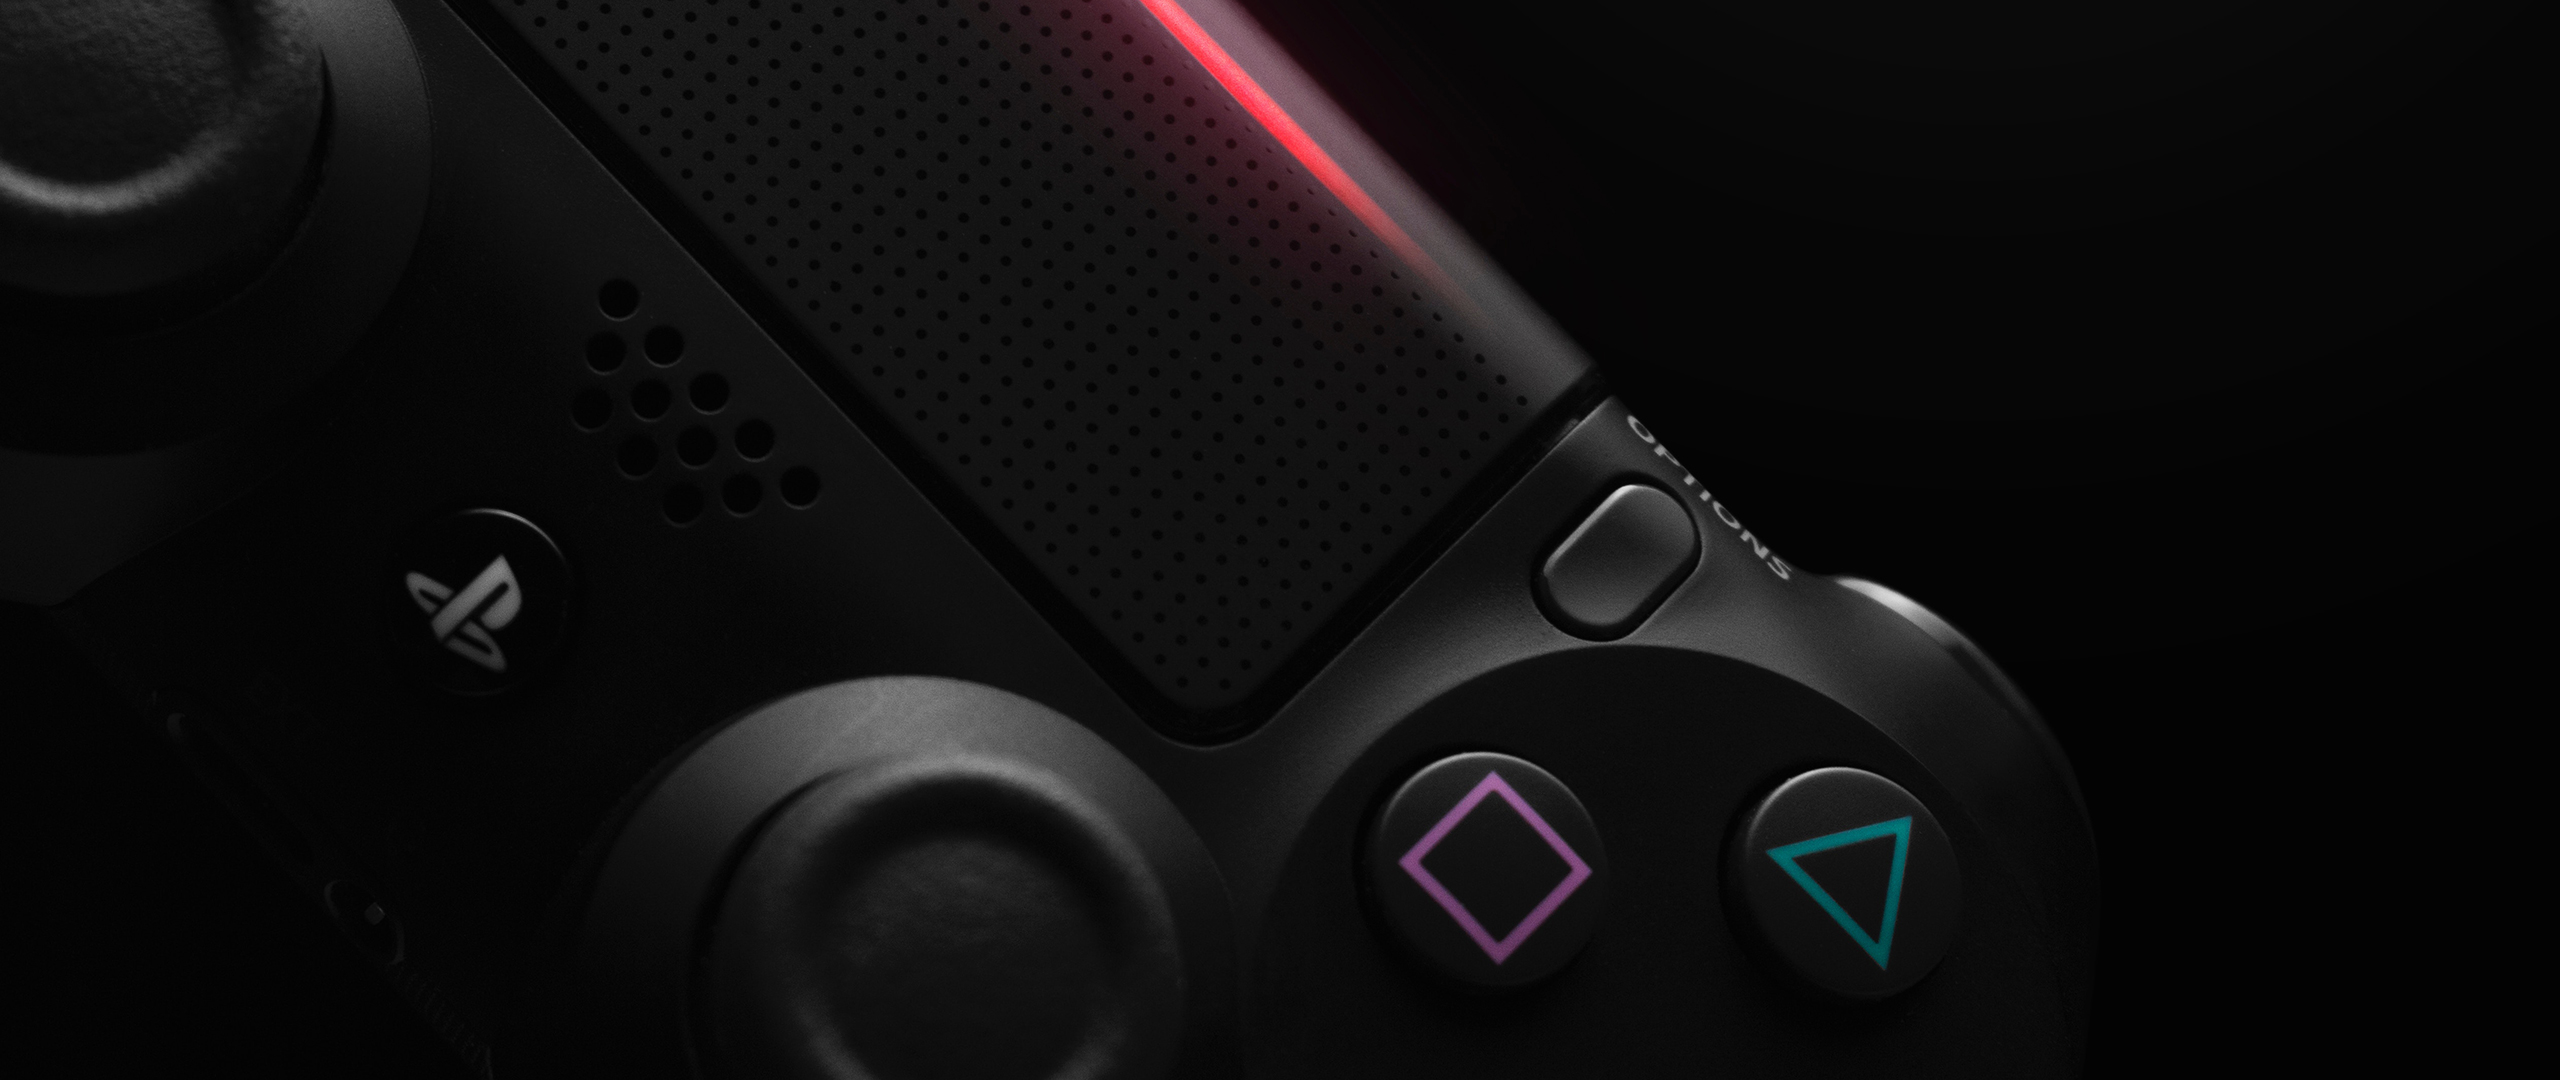 Een close-up van een Playstation 4 controller met een fijne detail